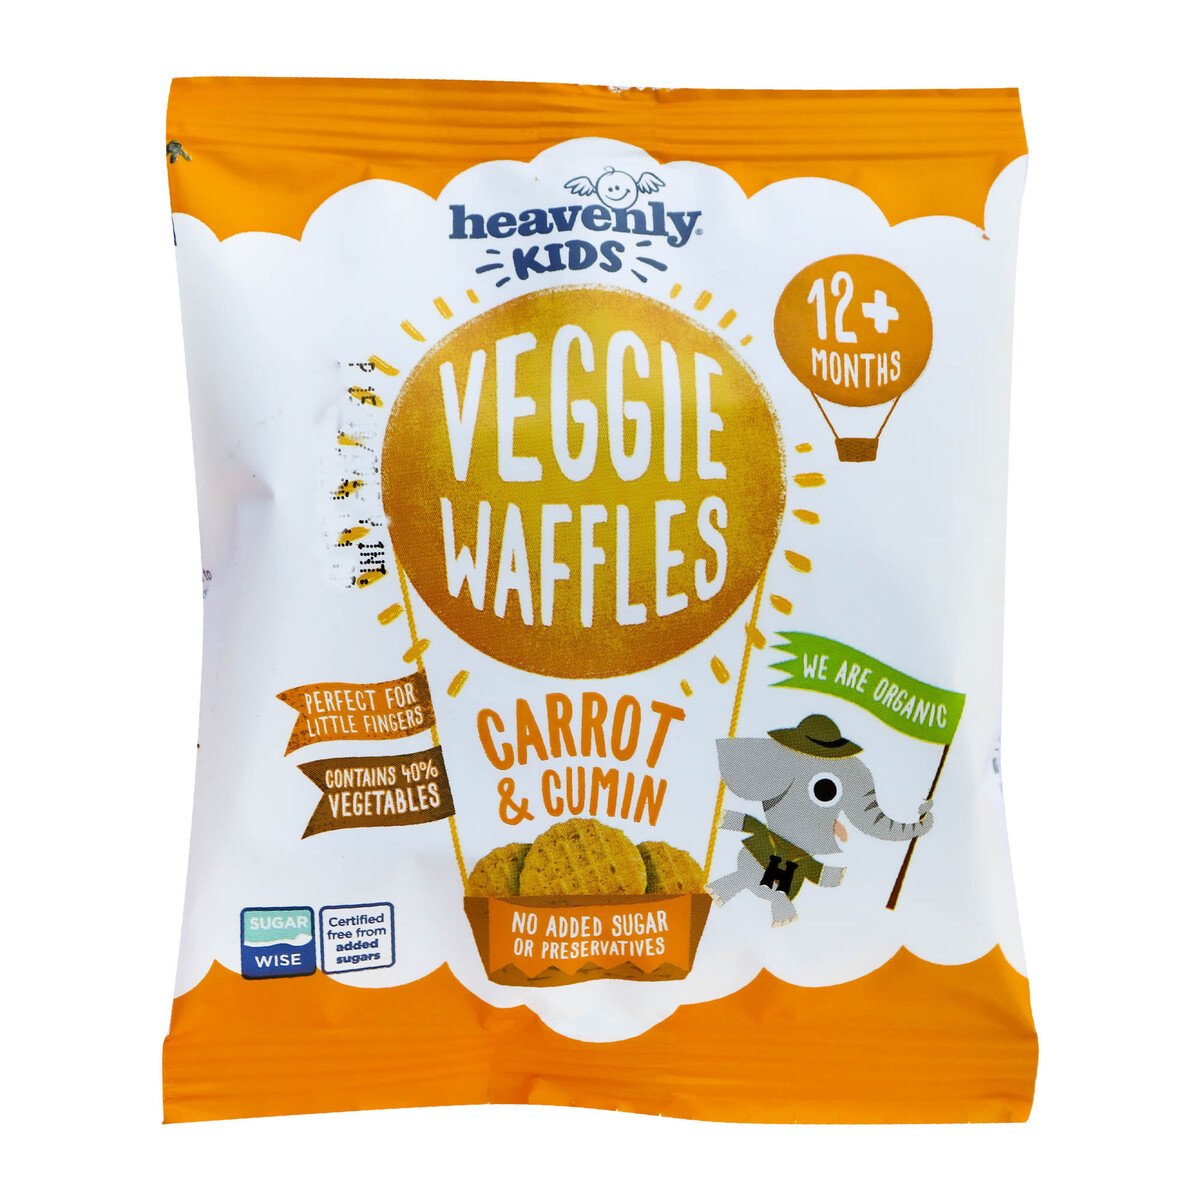 Heavenly Kids Veggie Waffles Carrot & Cumin 12+ months 10g